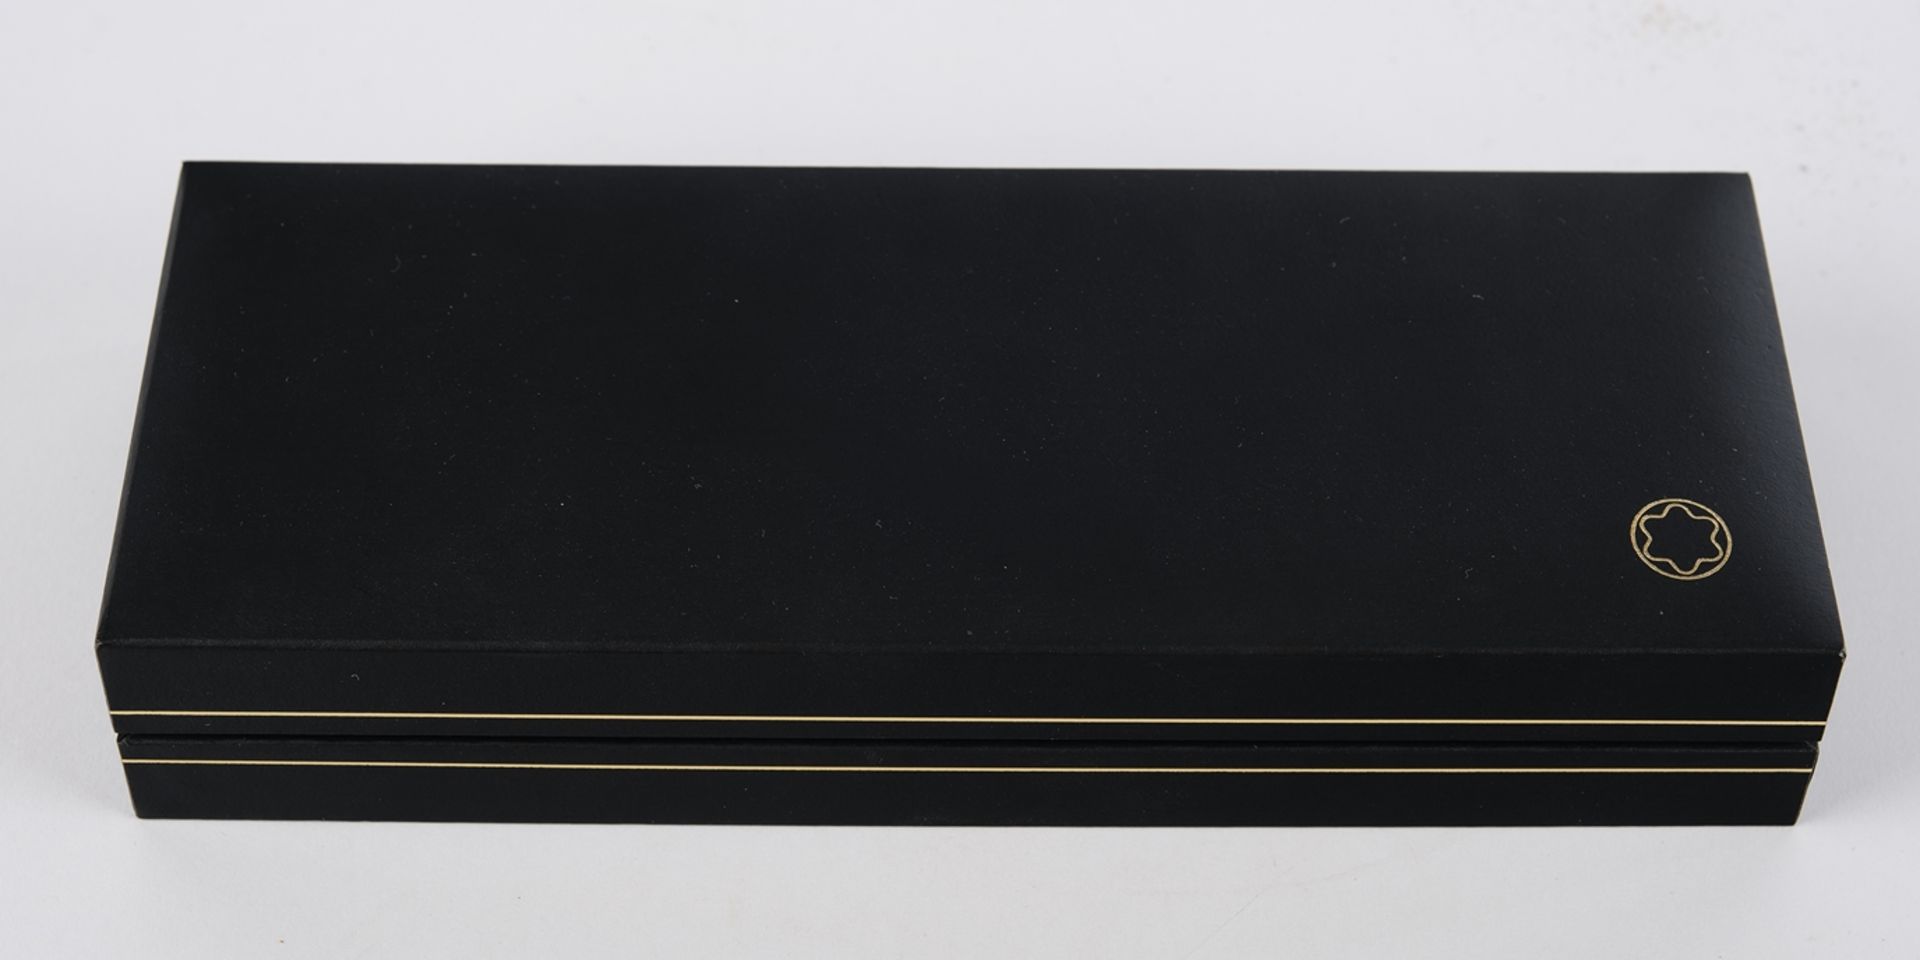 Rollerball, "Meisterstück", Montblanc, Modell 162, nummeriert PV1265097, schwarz/vergoldet, 14.5 cm - Bild 2 aus 4